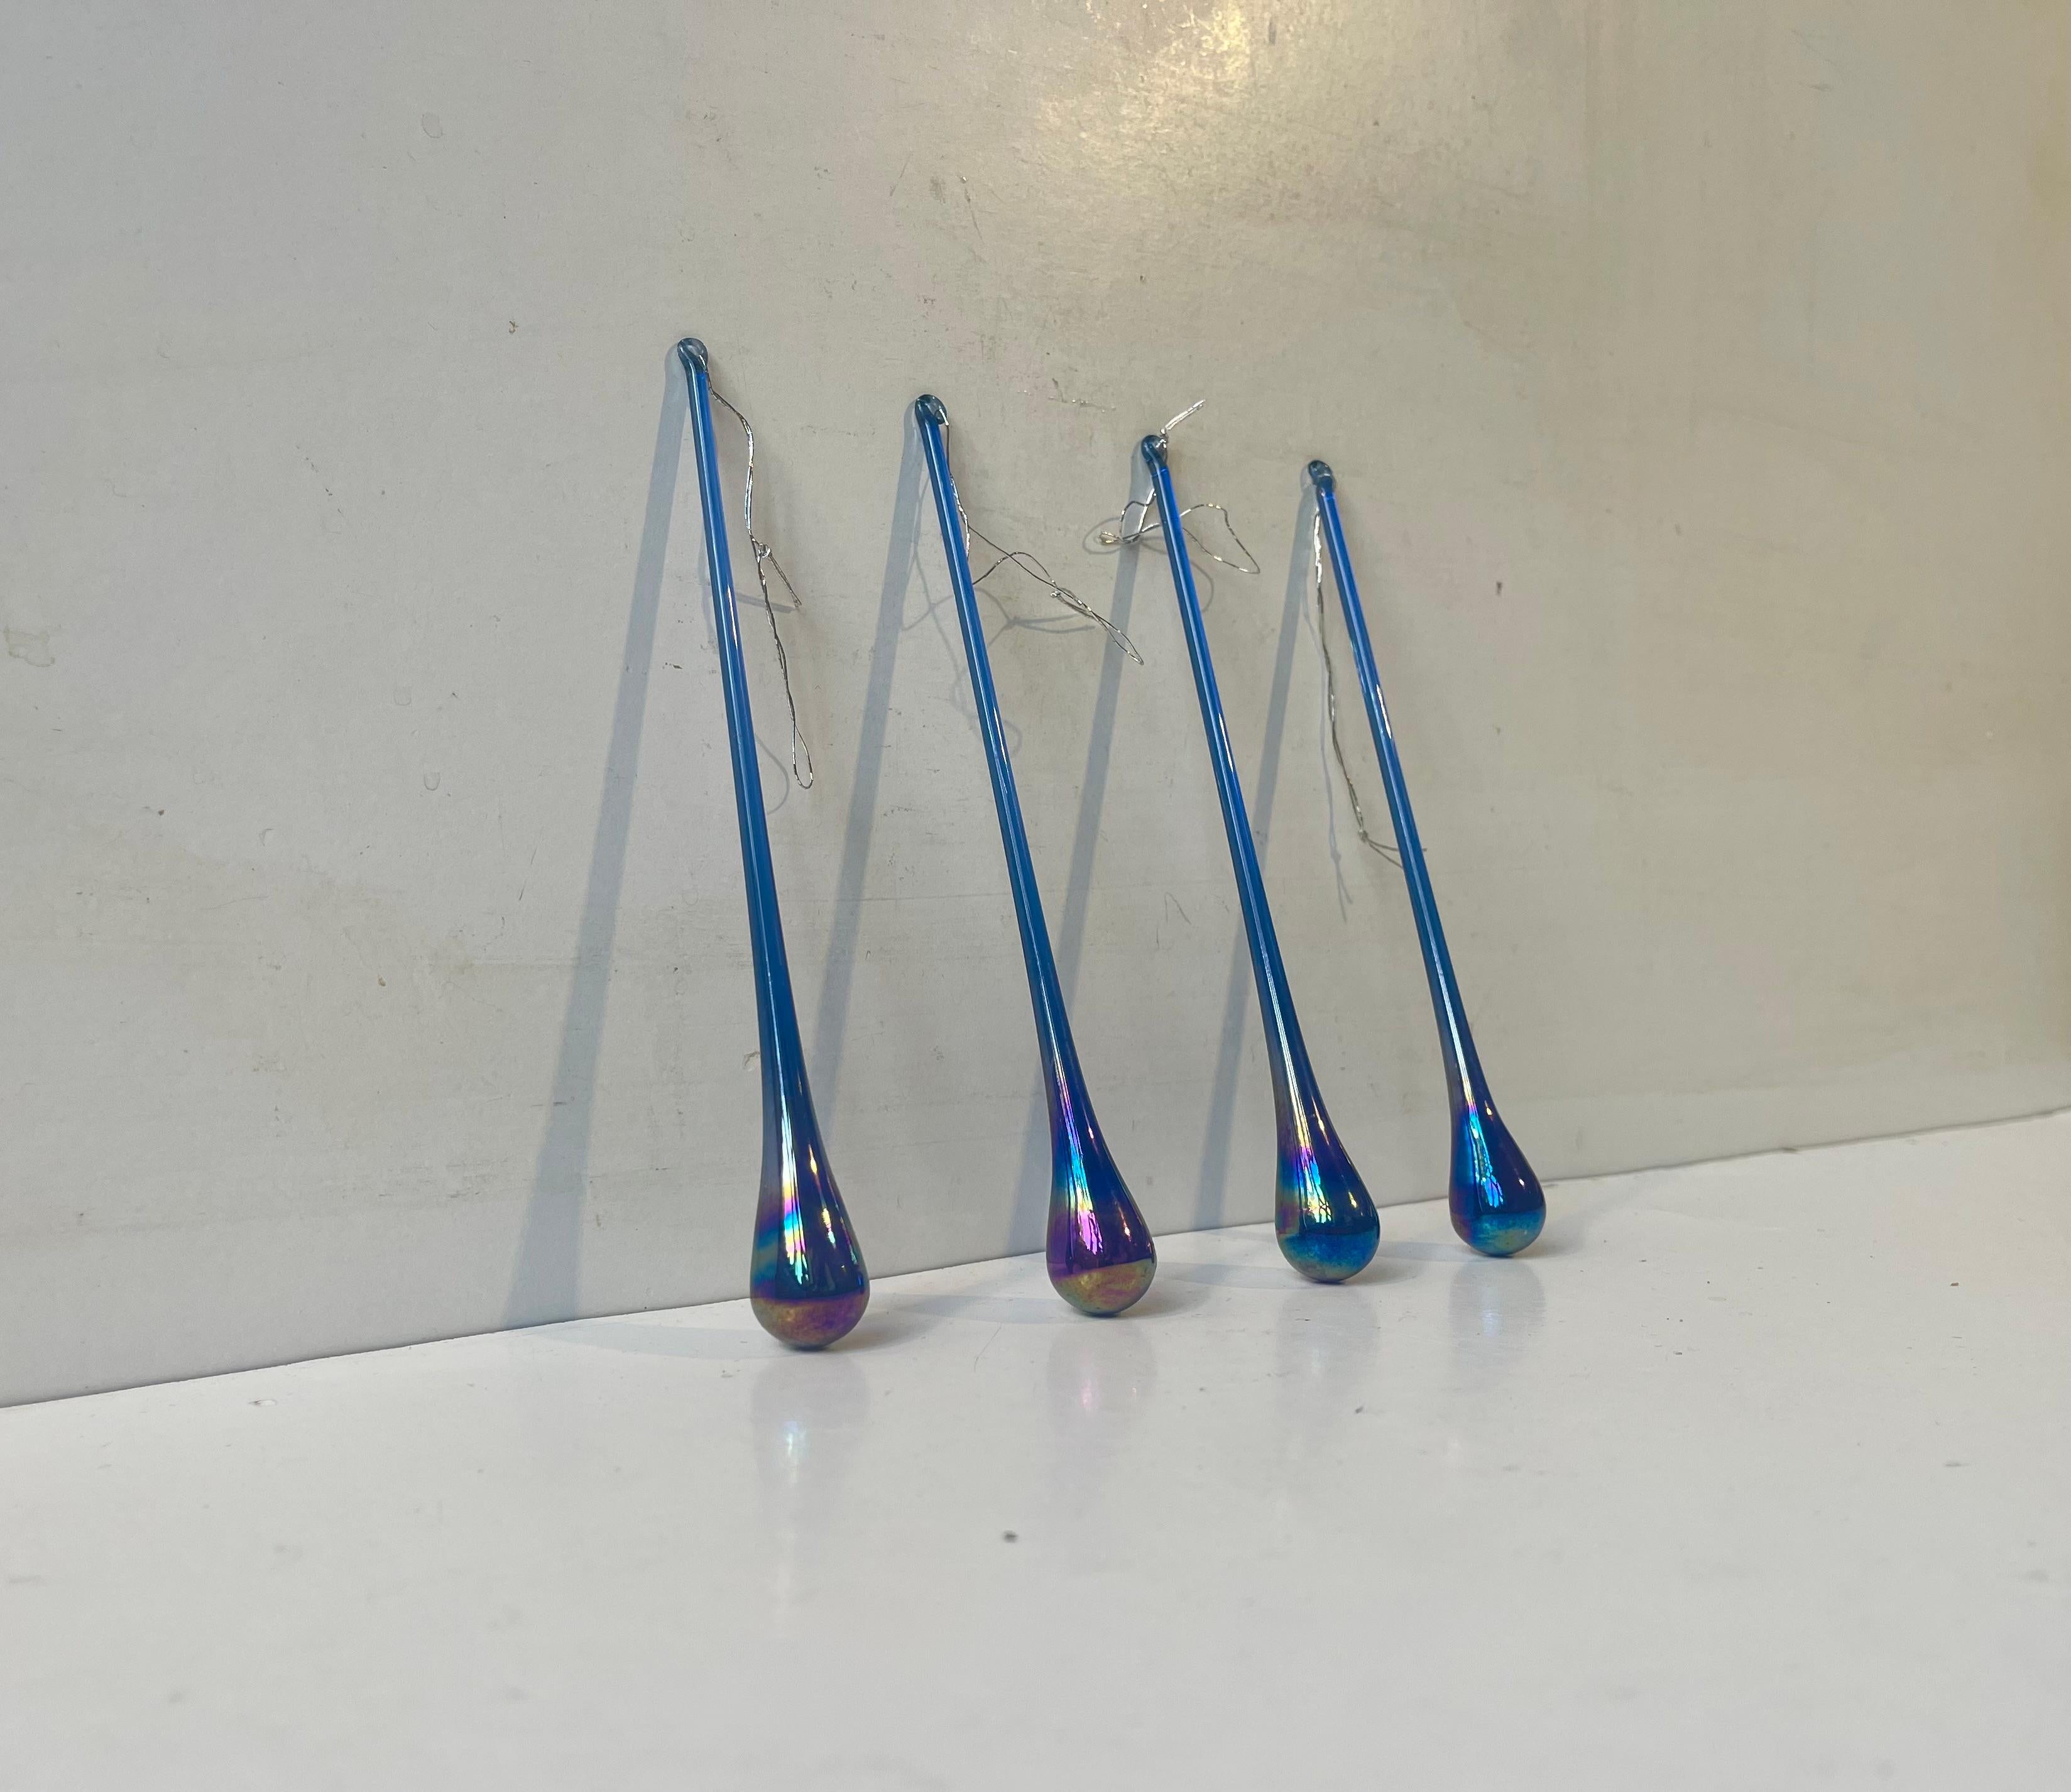 Ein Satz von 4 tropfenförmigen Glasornamenten oder Sonnenfängern aus irredentem kobaltblauem Glas. Unbekannter skandinavischer Glashersteller, ca. 1970-80. Maße: H: 15 cm (ohne Schnur), B/T: 2/2 cm. Der Preis gilt für den Satz von 4.